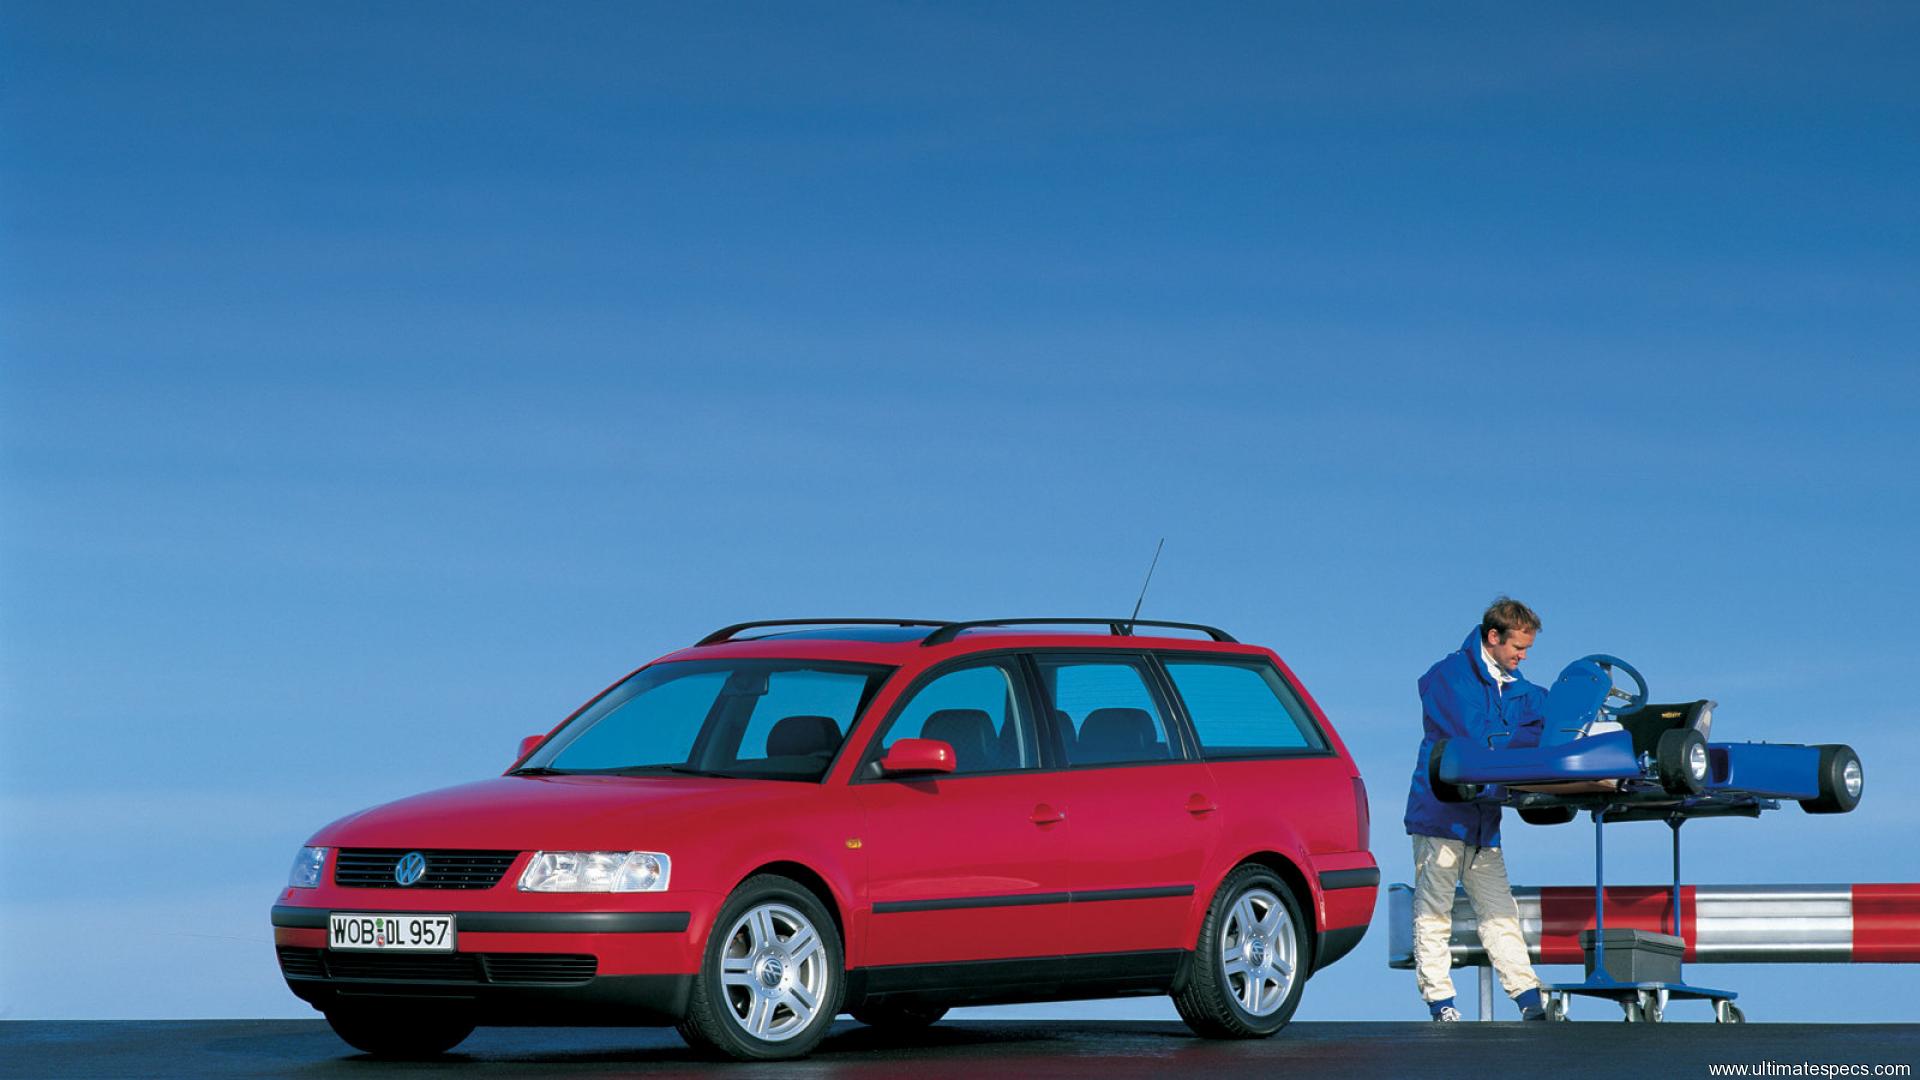 Фольксваген пассат 5 универсал. Volkswagen Passat 1997 универсал. Volkswagen Passat b5 variant. Volkswagen Passat b5 универсал. Volkswagen Passat variant 1997.